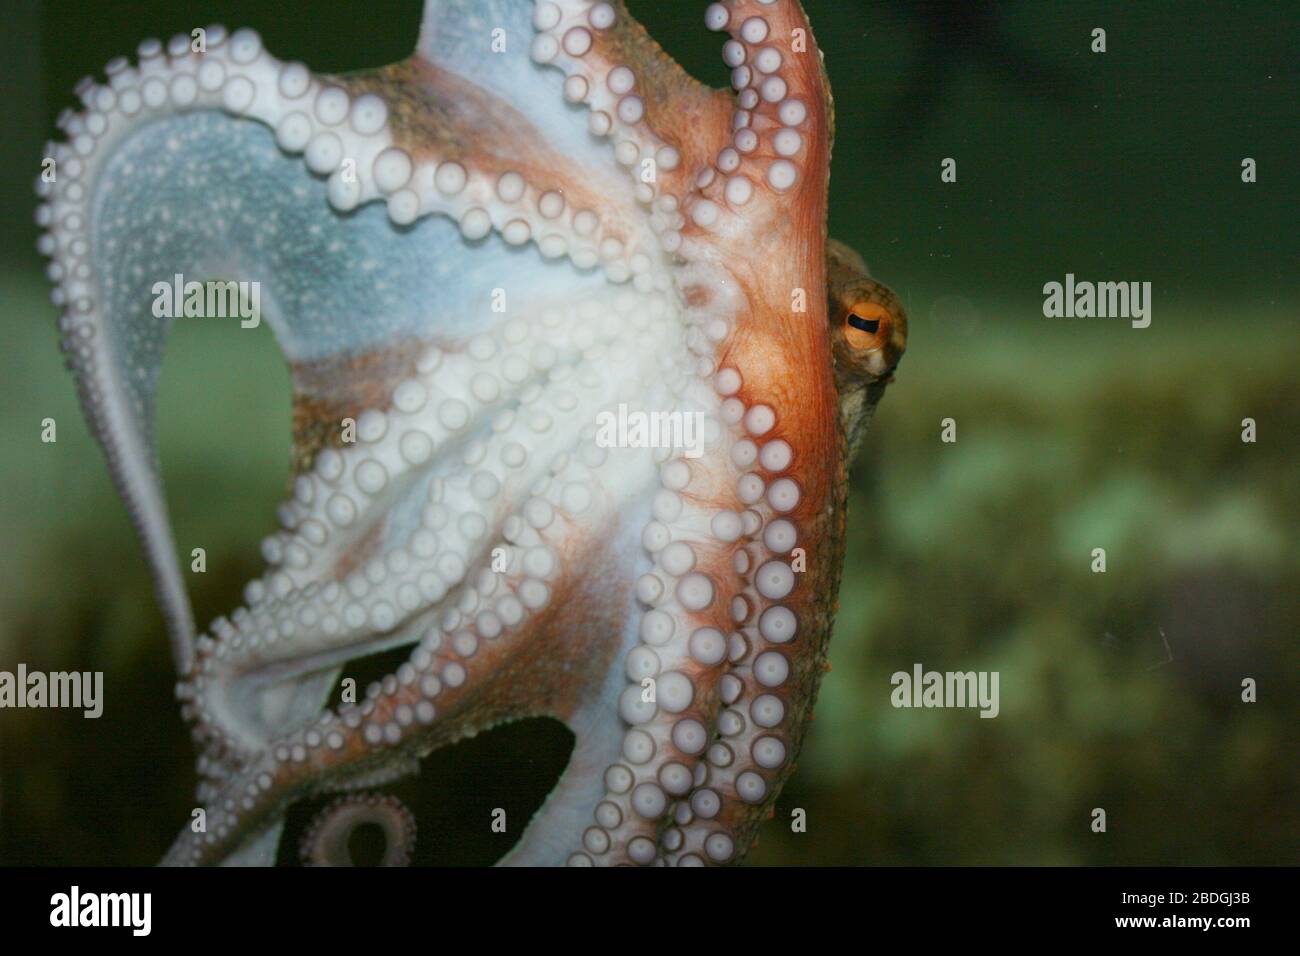 Detail view of a octopus (Octopoda)Detailansicht von einem Kraken (Octopoda) Stock Photo